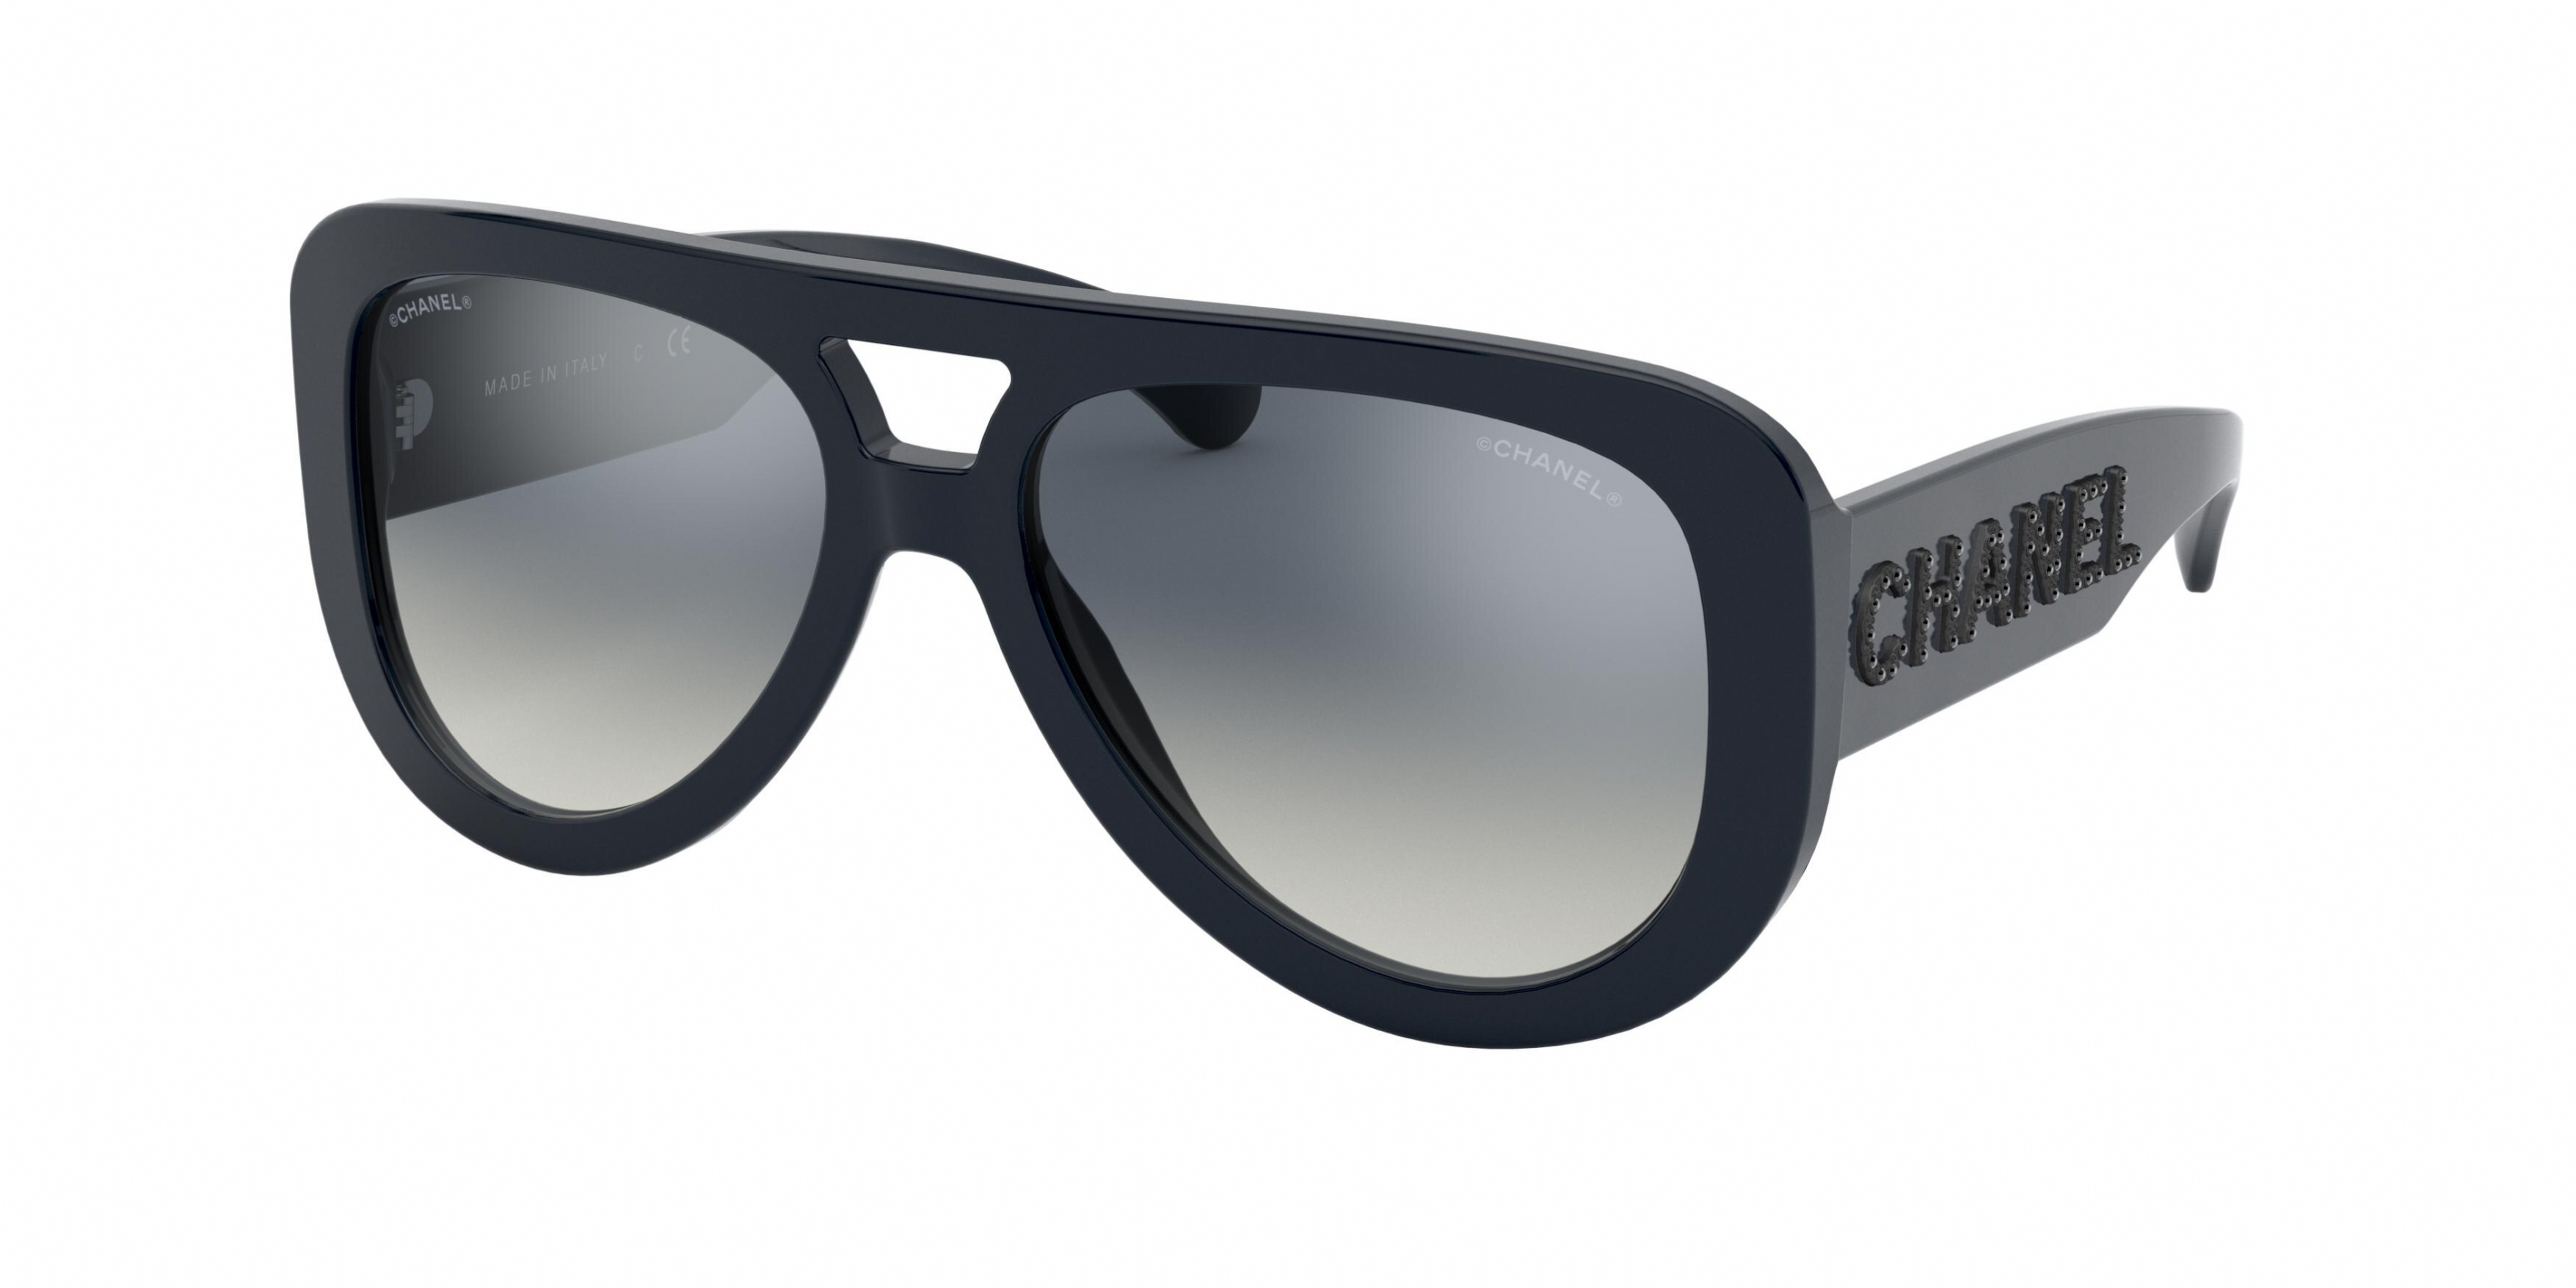 Chanel 5423b Sunglasses